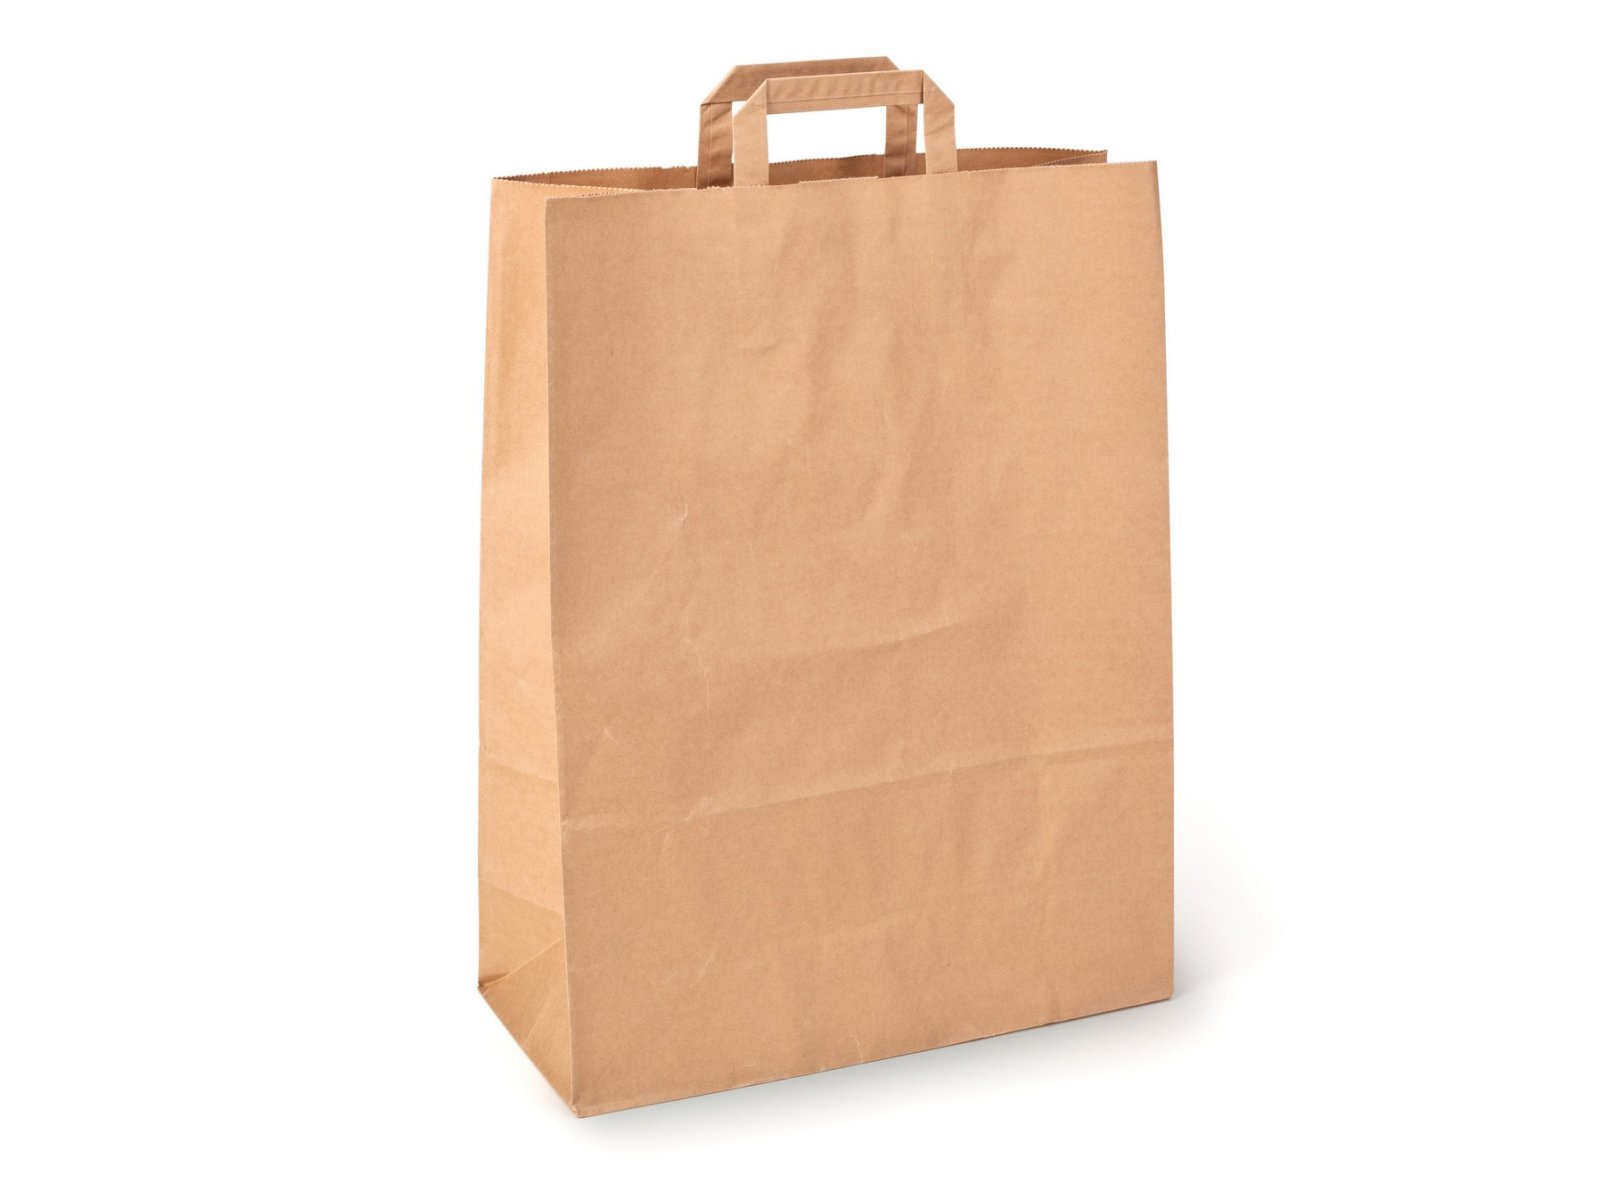 Бумажный крафт пакет-сумка с плоскими ручками отлично подходит для пищевых продуктов и бытовых товаров. Благодаря плотной бумаге 80 г/м2, пакет обладает высокой прочностью и отлично держит форму. Размер пакета 35х45 см, ширина бокового фальца 15 см. В упаковке 200 штук.